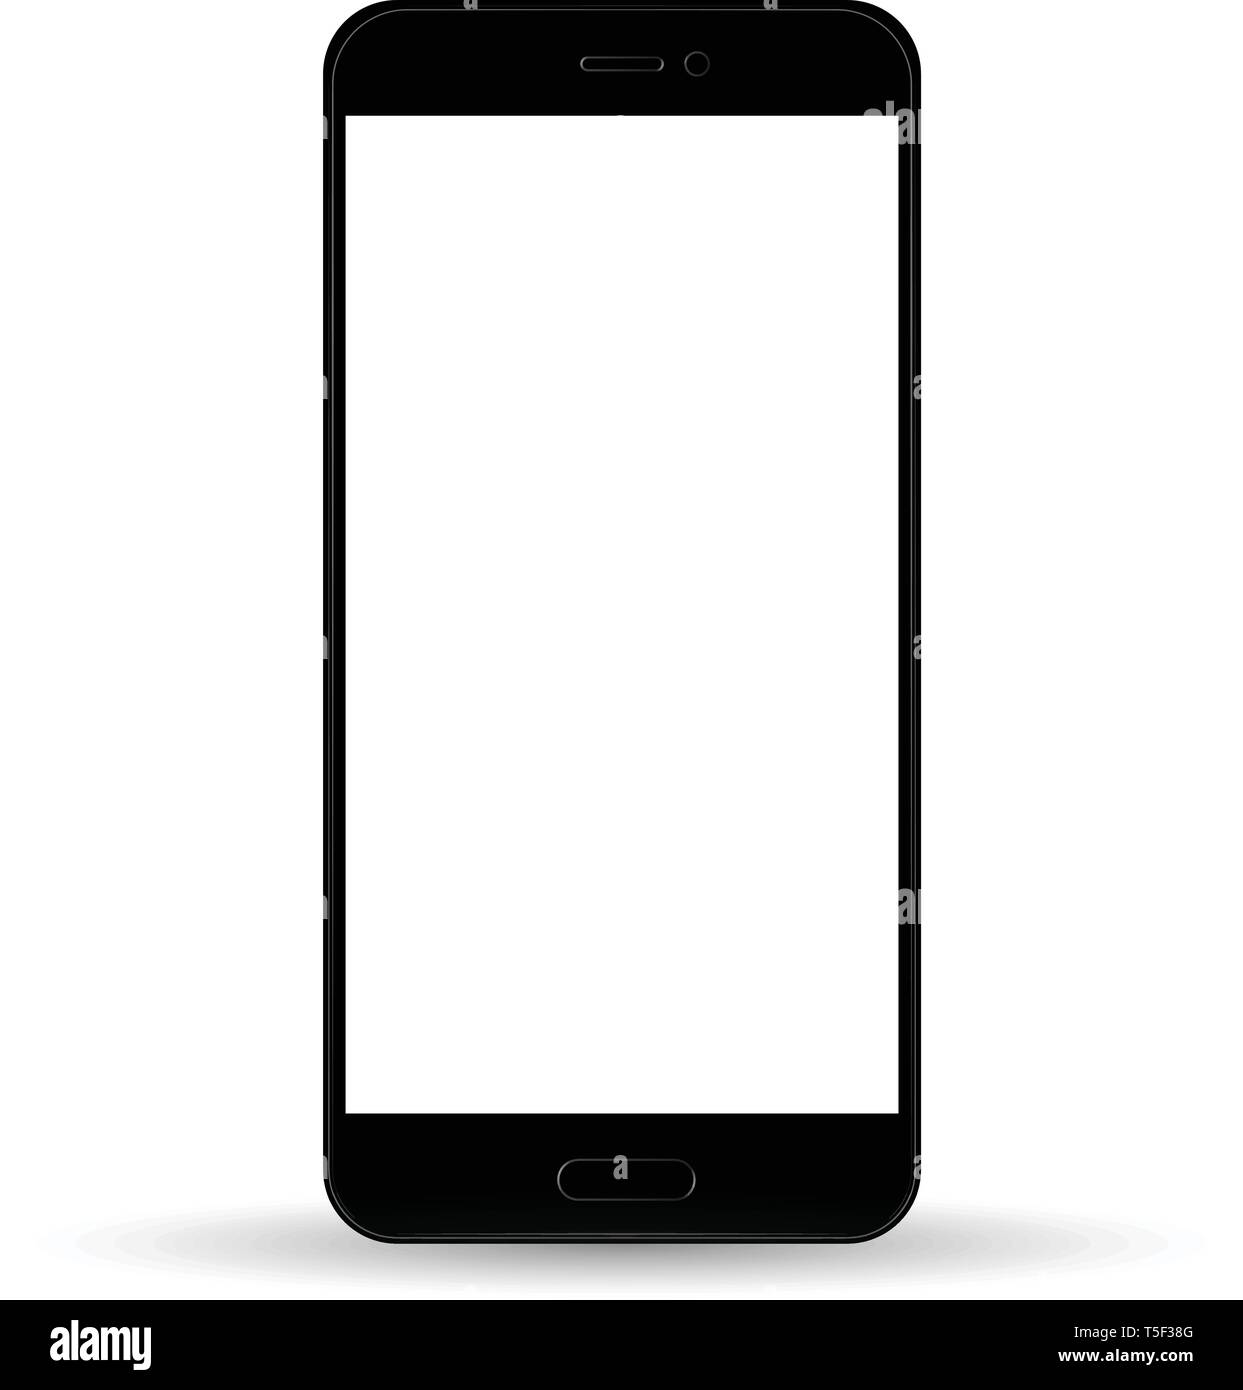 Điện thoại di động kiểu iPhone màu đen: Màu đen luôn là sự lựa chọn hoàn hảo cho những ai yêu thích sự tối giản và sang trọng. Xem qua các hình ảnh của điện thoại di động kiểu iPhone màu đen để tìm kiếm một sản phẩm hoàn hảo cho mình.